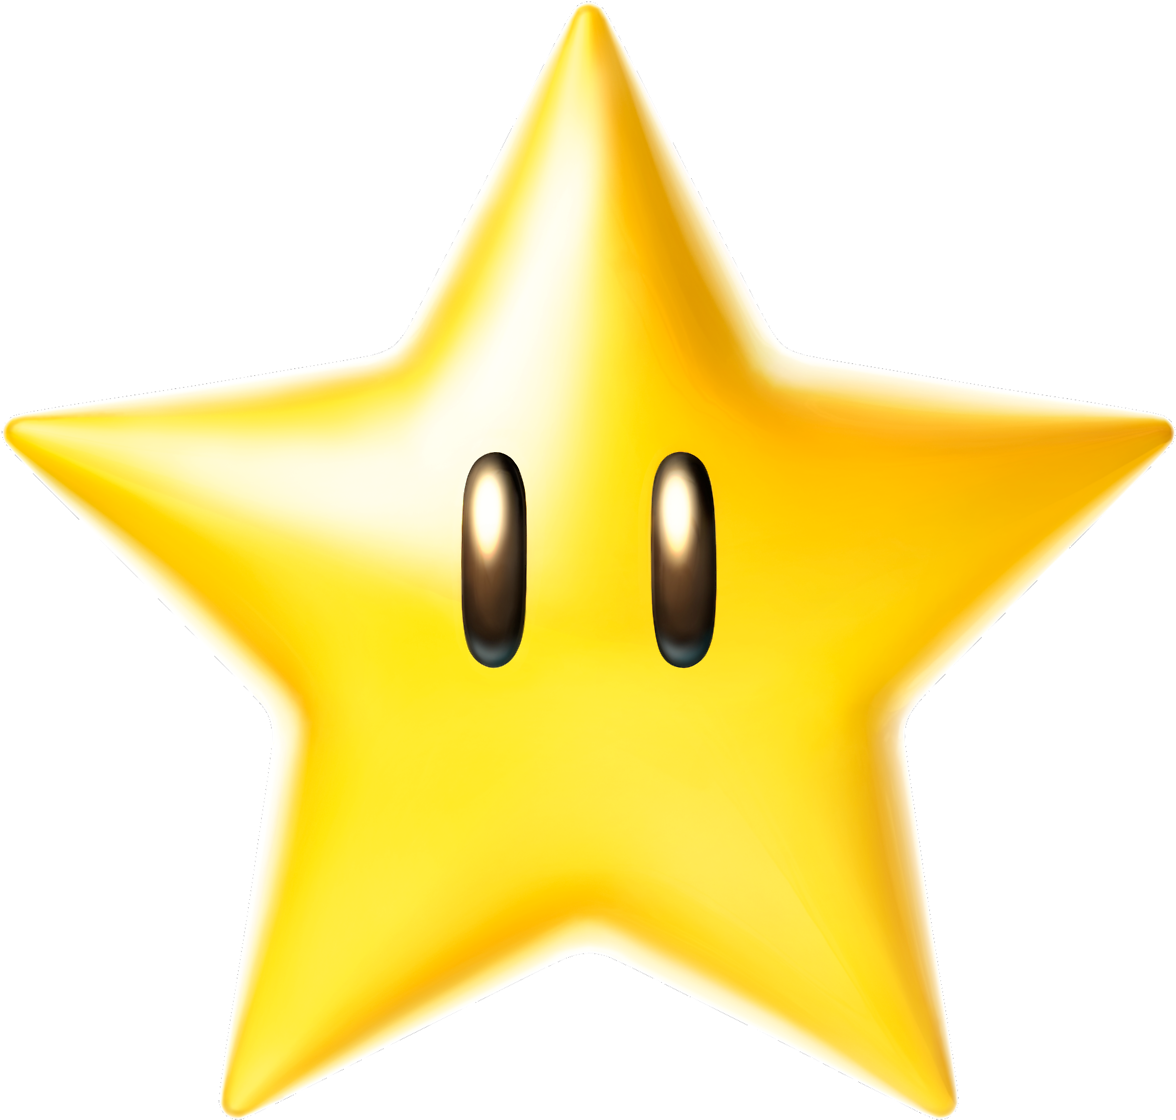 Mario Kart Estrella Star - Estrella Mario Kart Png (1280x1280), Png Download